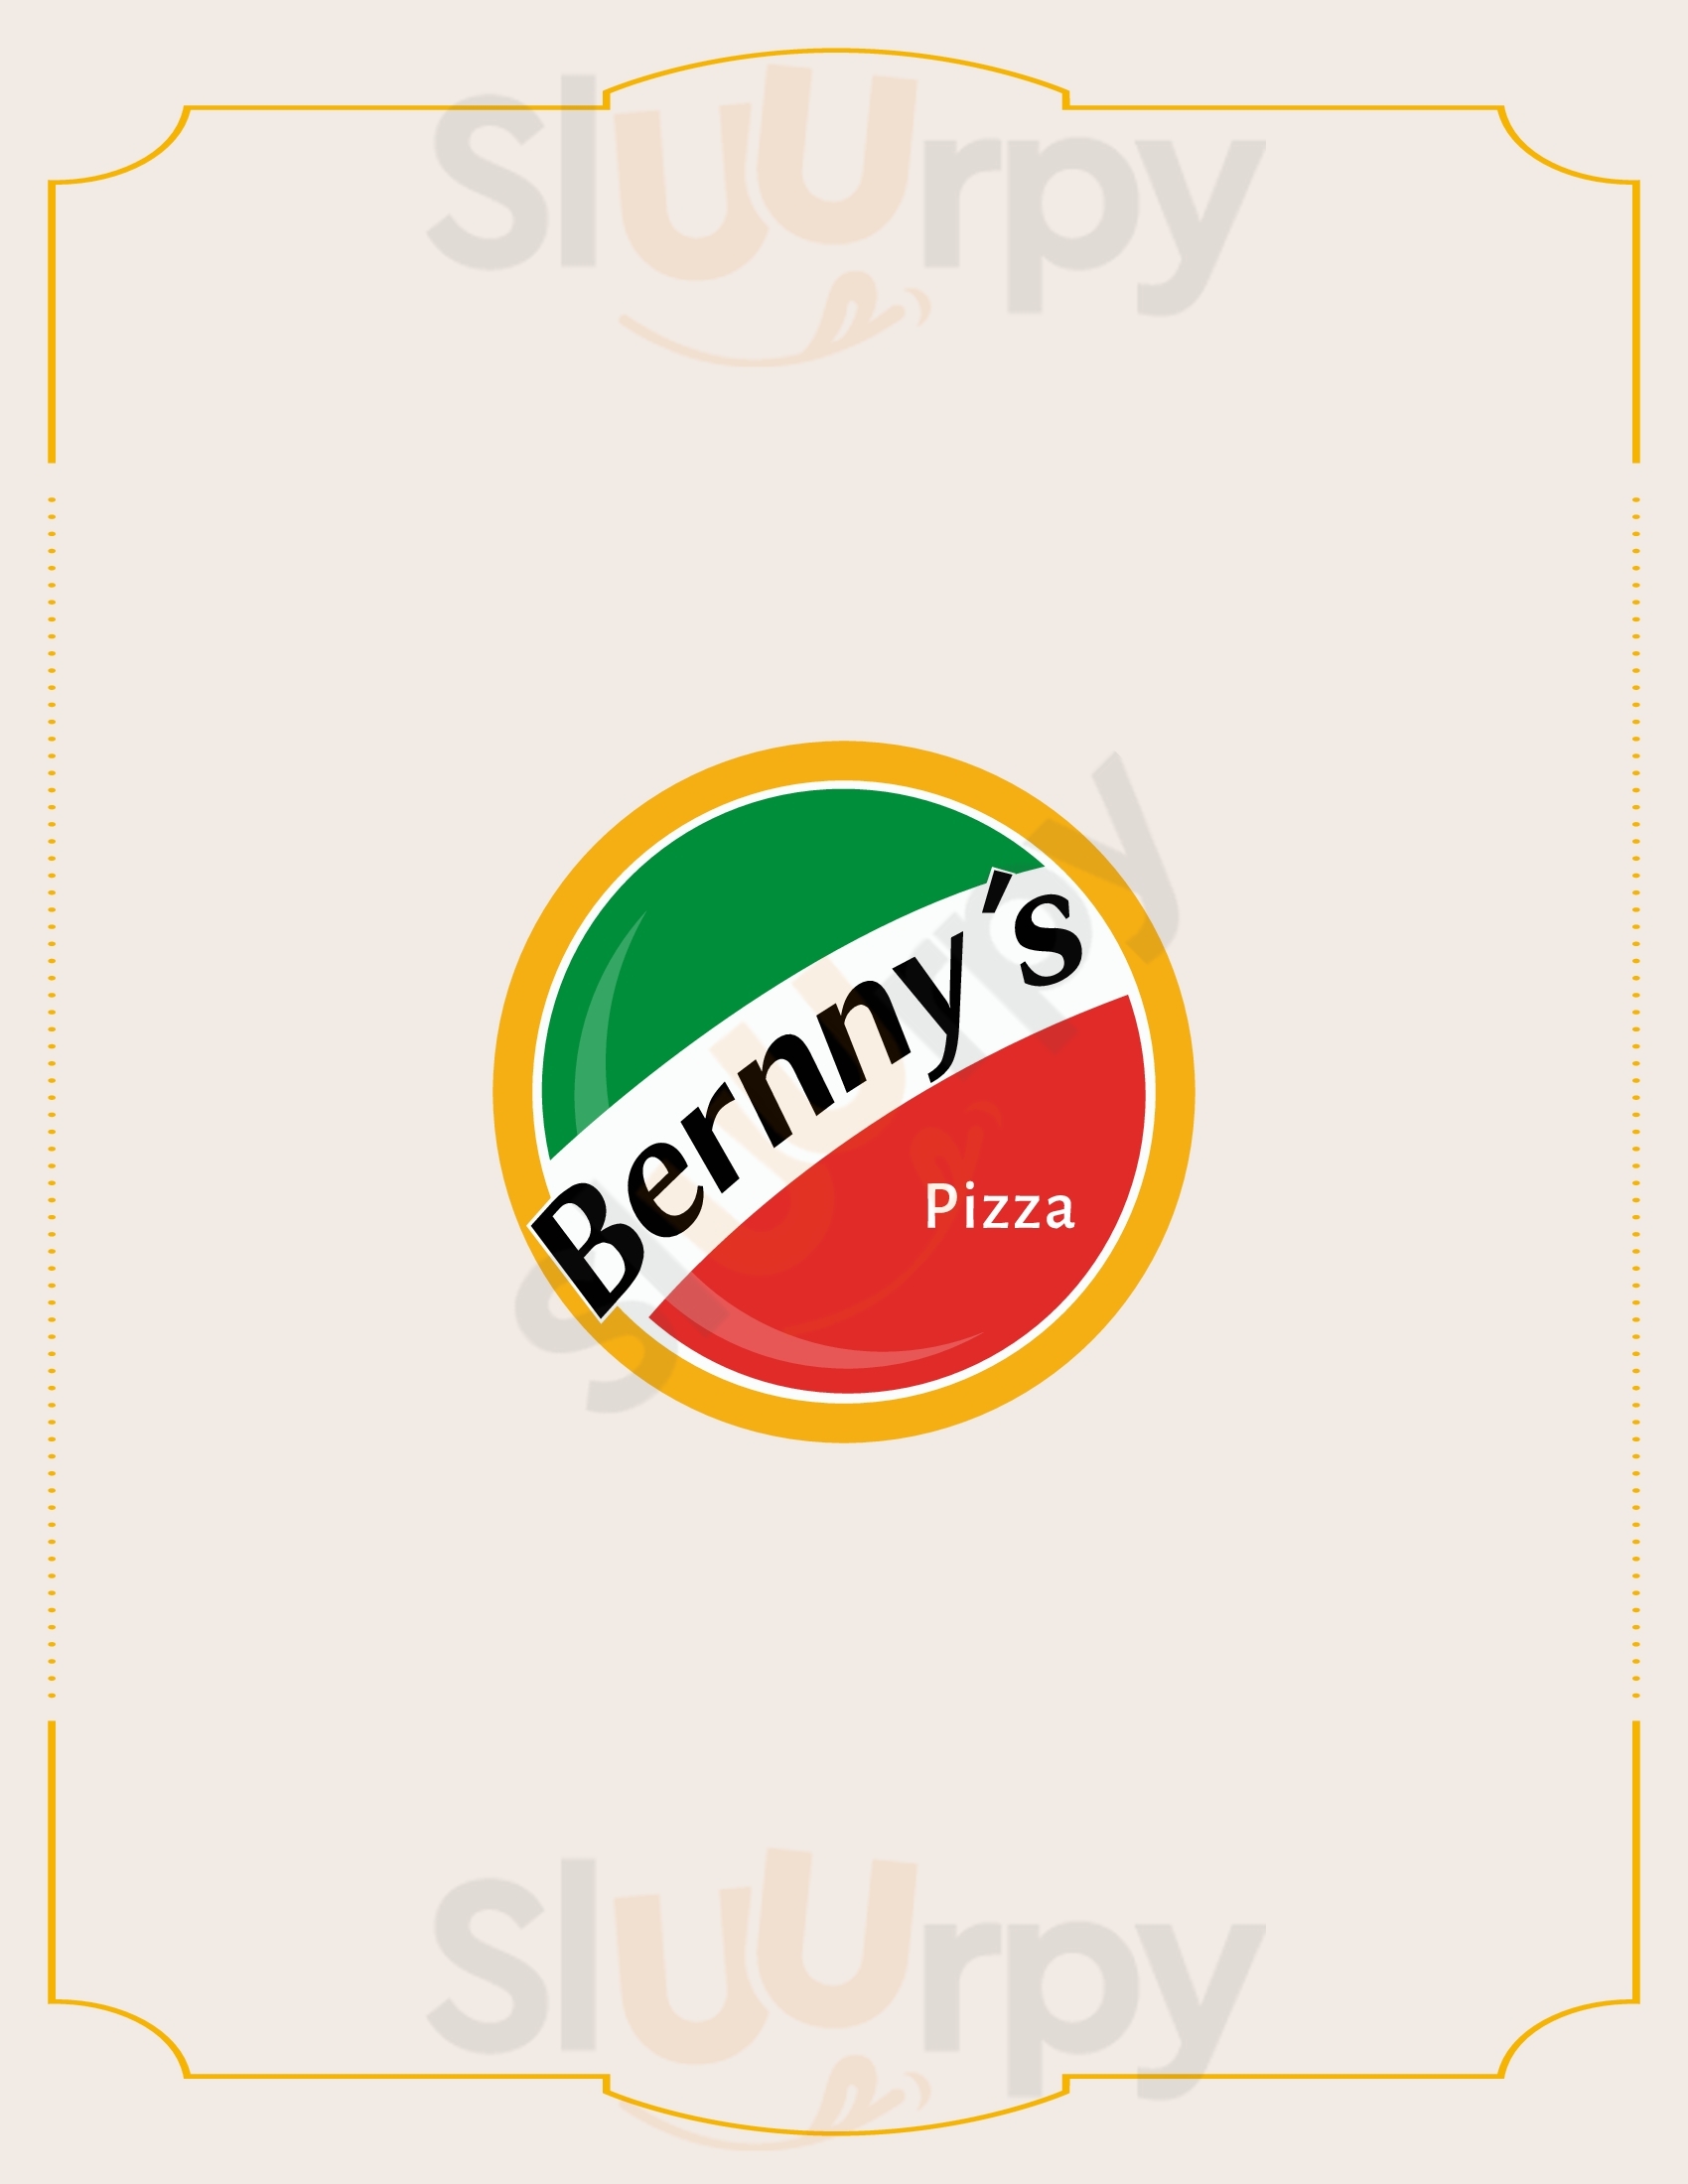 Bernny's Pizza Barranquilla Menu - 1